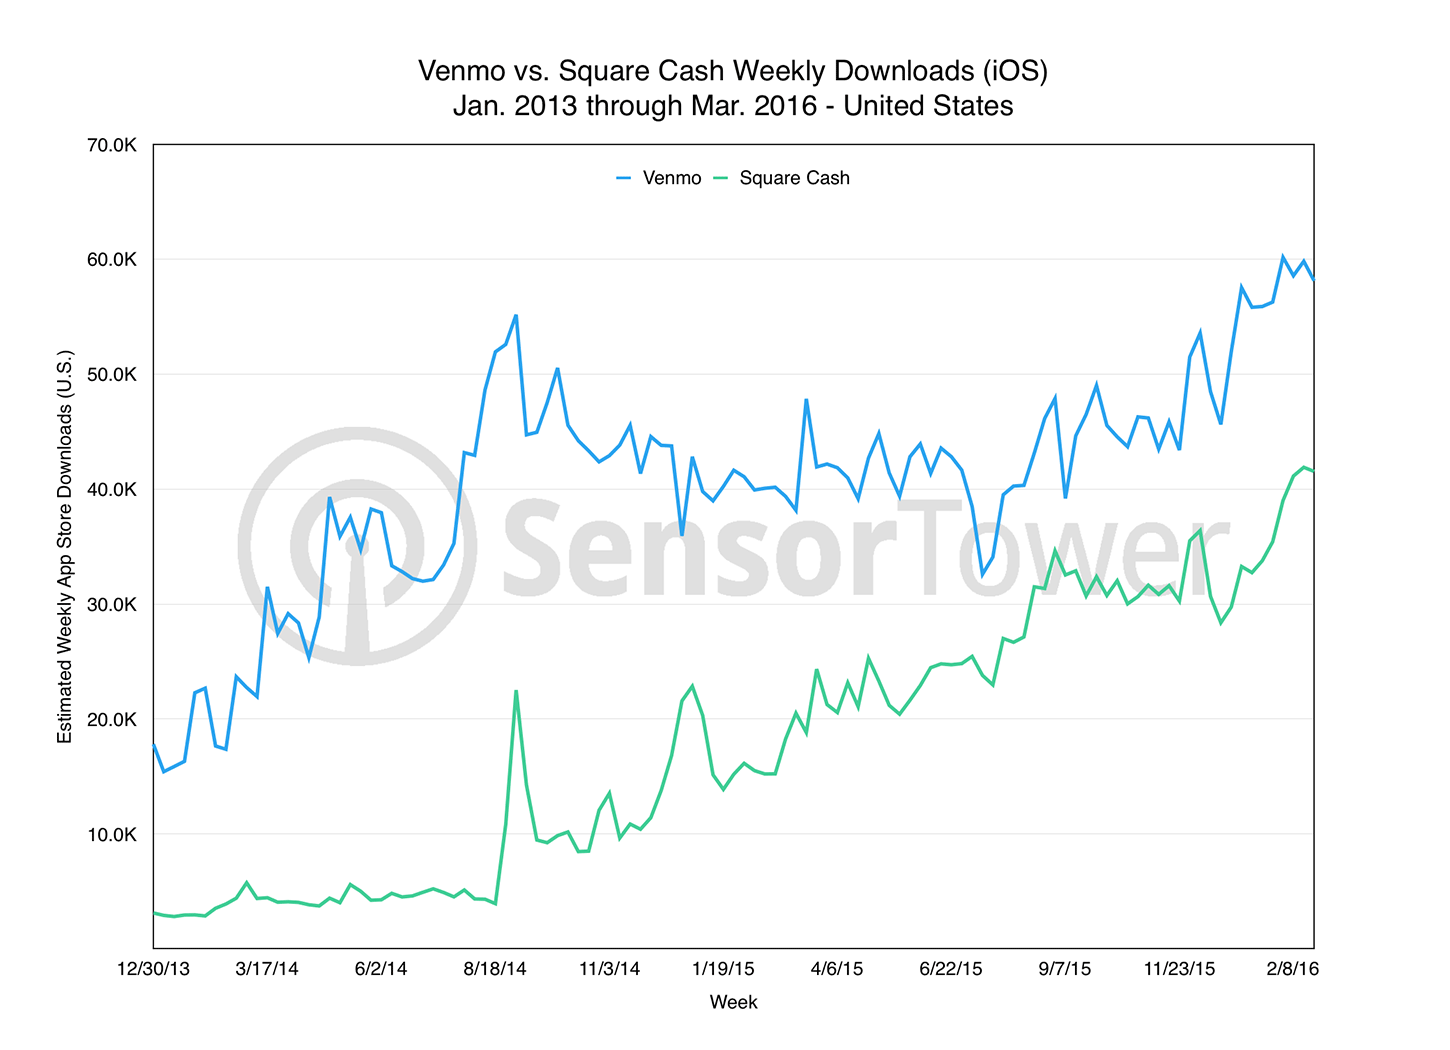 Square Cash vs. Venmo Downloads Chart